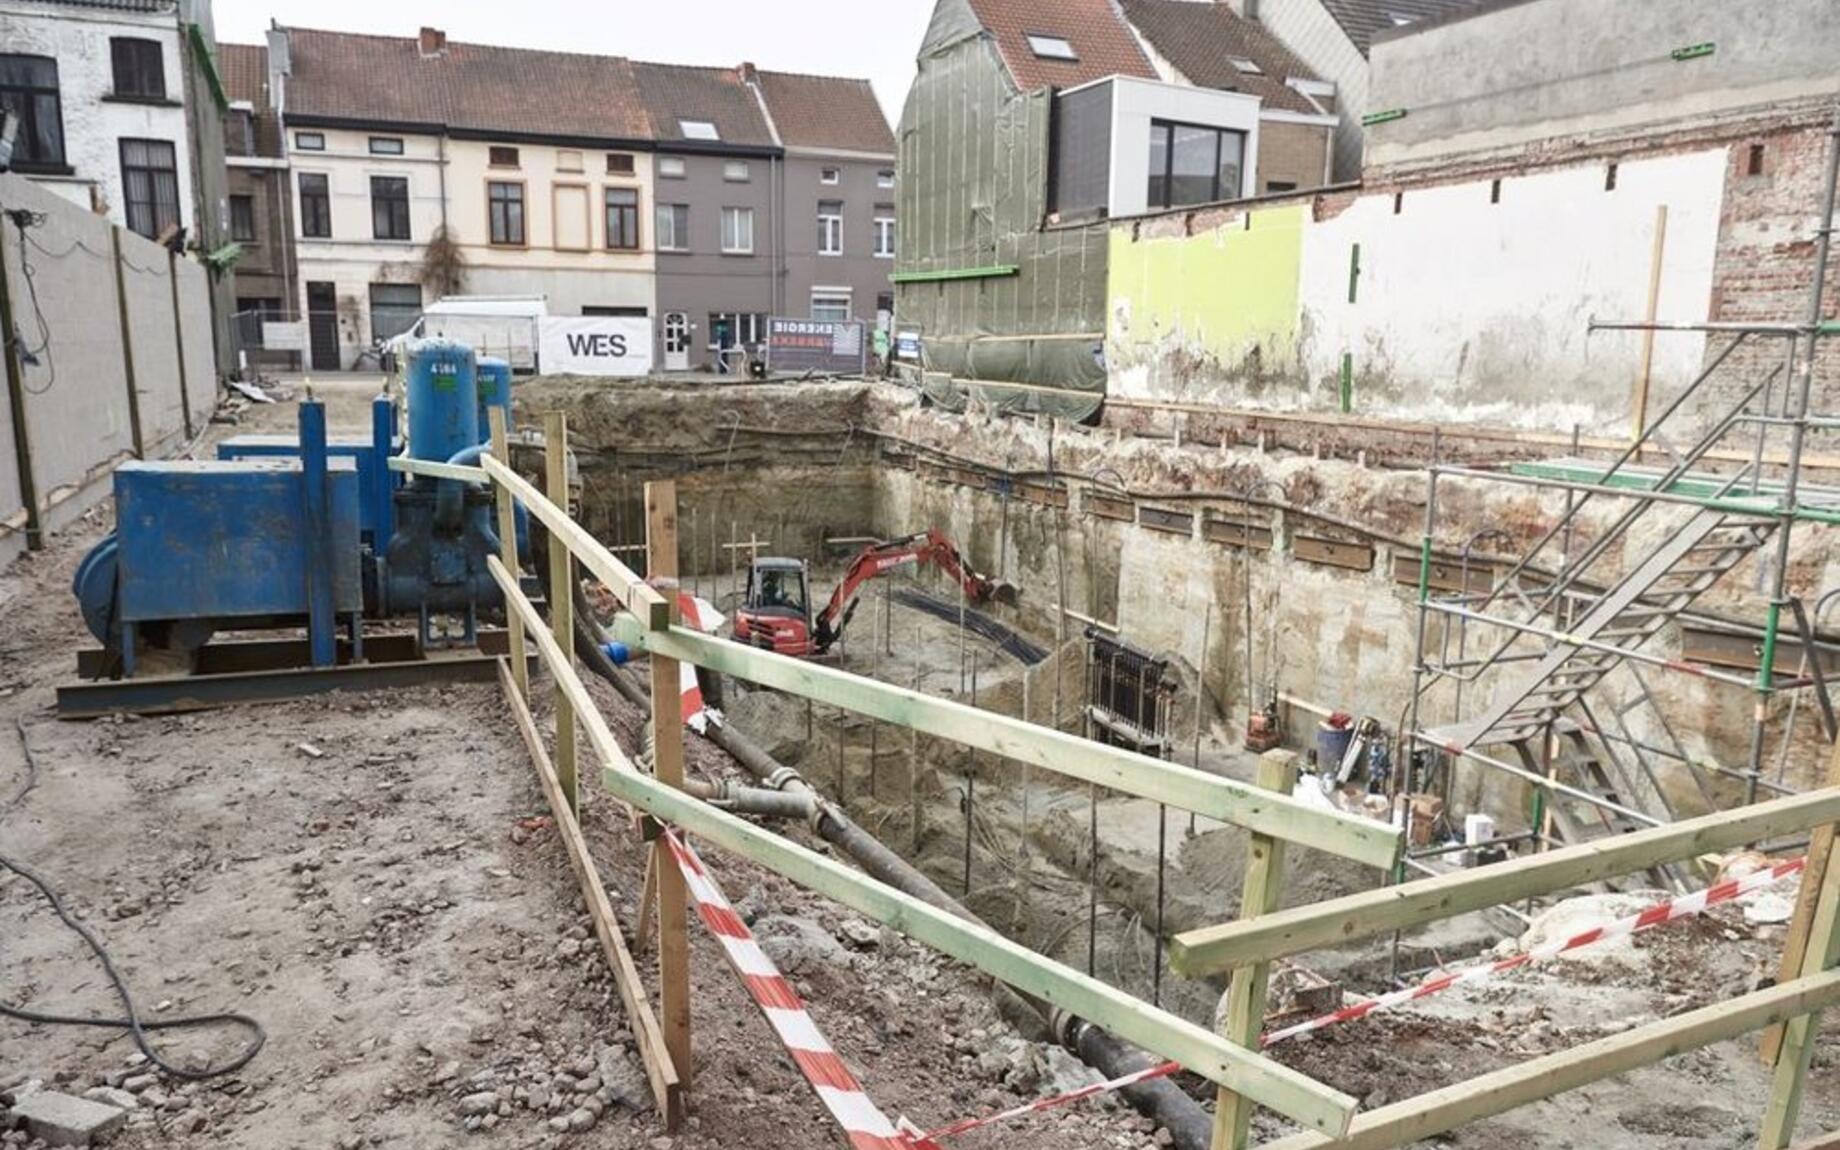 De nieuwbouw voor basisschool Henri D'Haese in Gentbrugge is een voorloper, met enkel fossielvrije energie